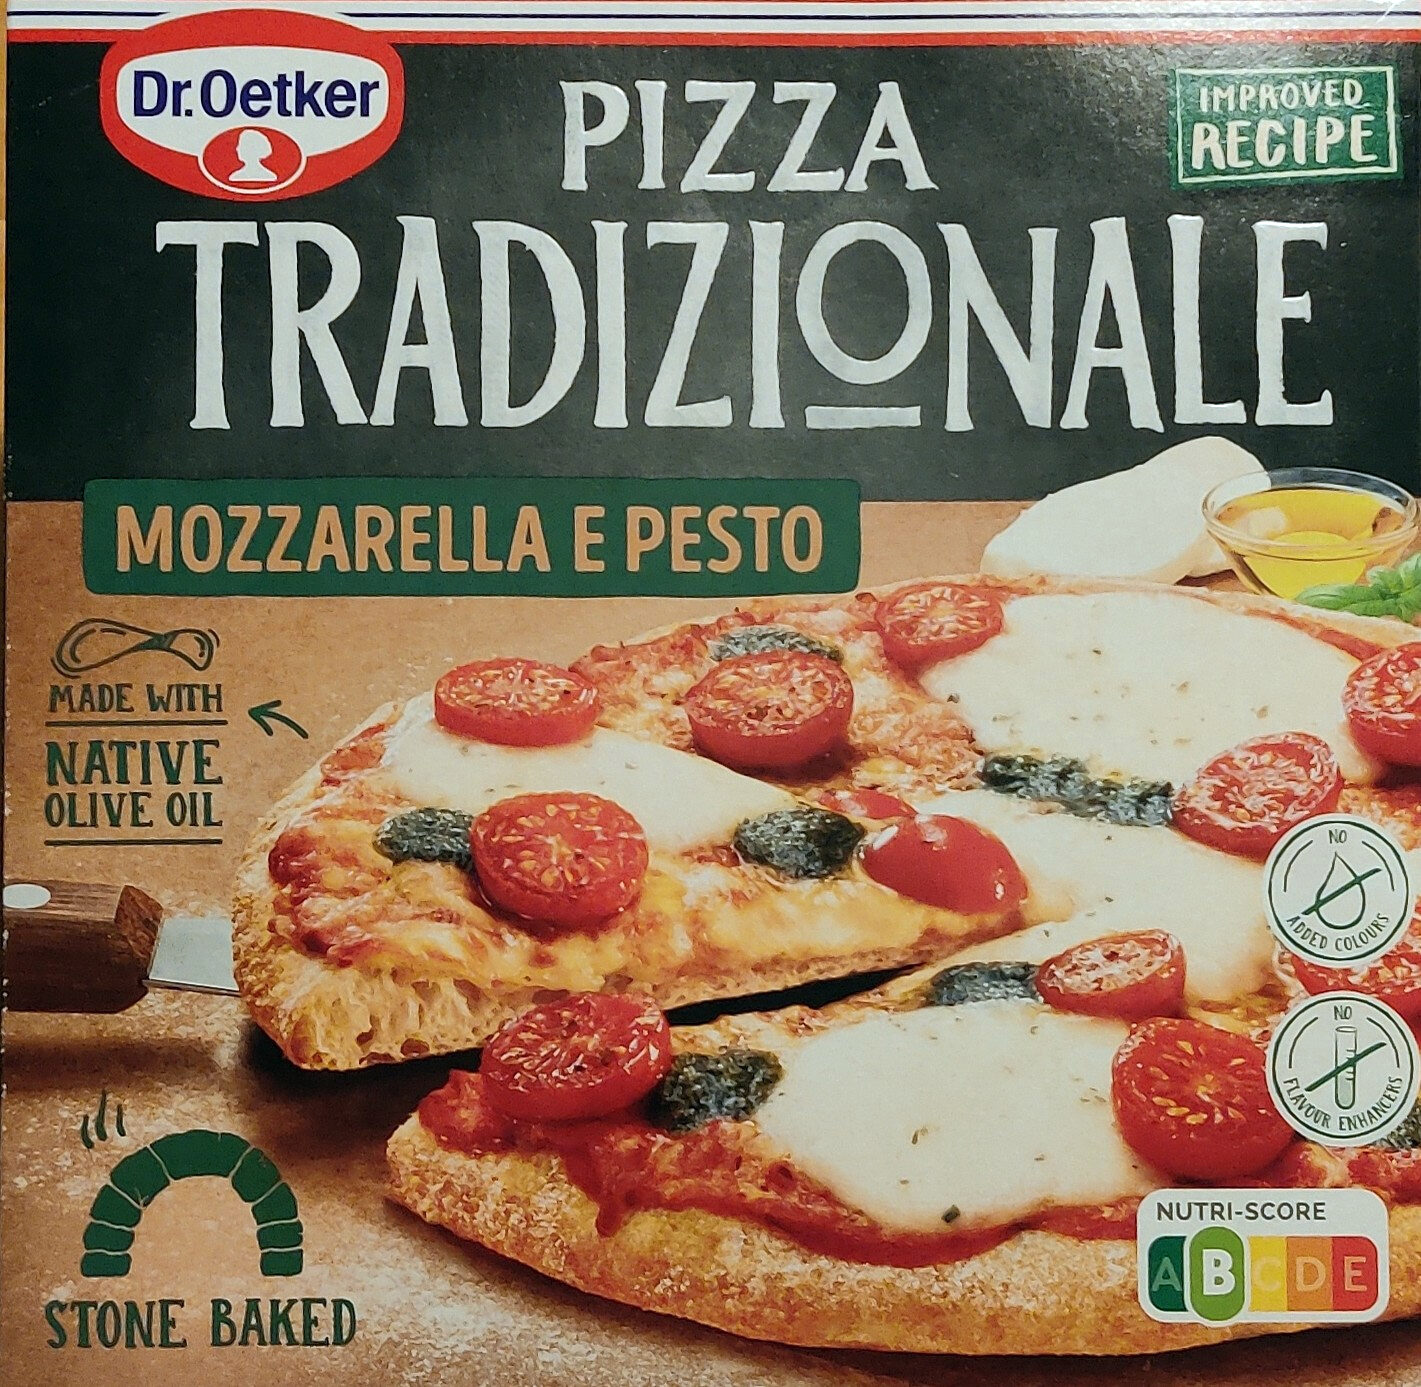 Pizza Tradizionale - Mozarella e Pesto - Produkt - sv